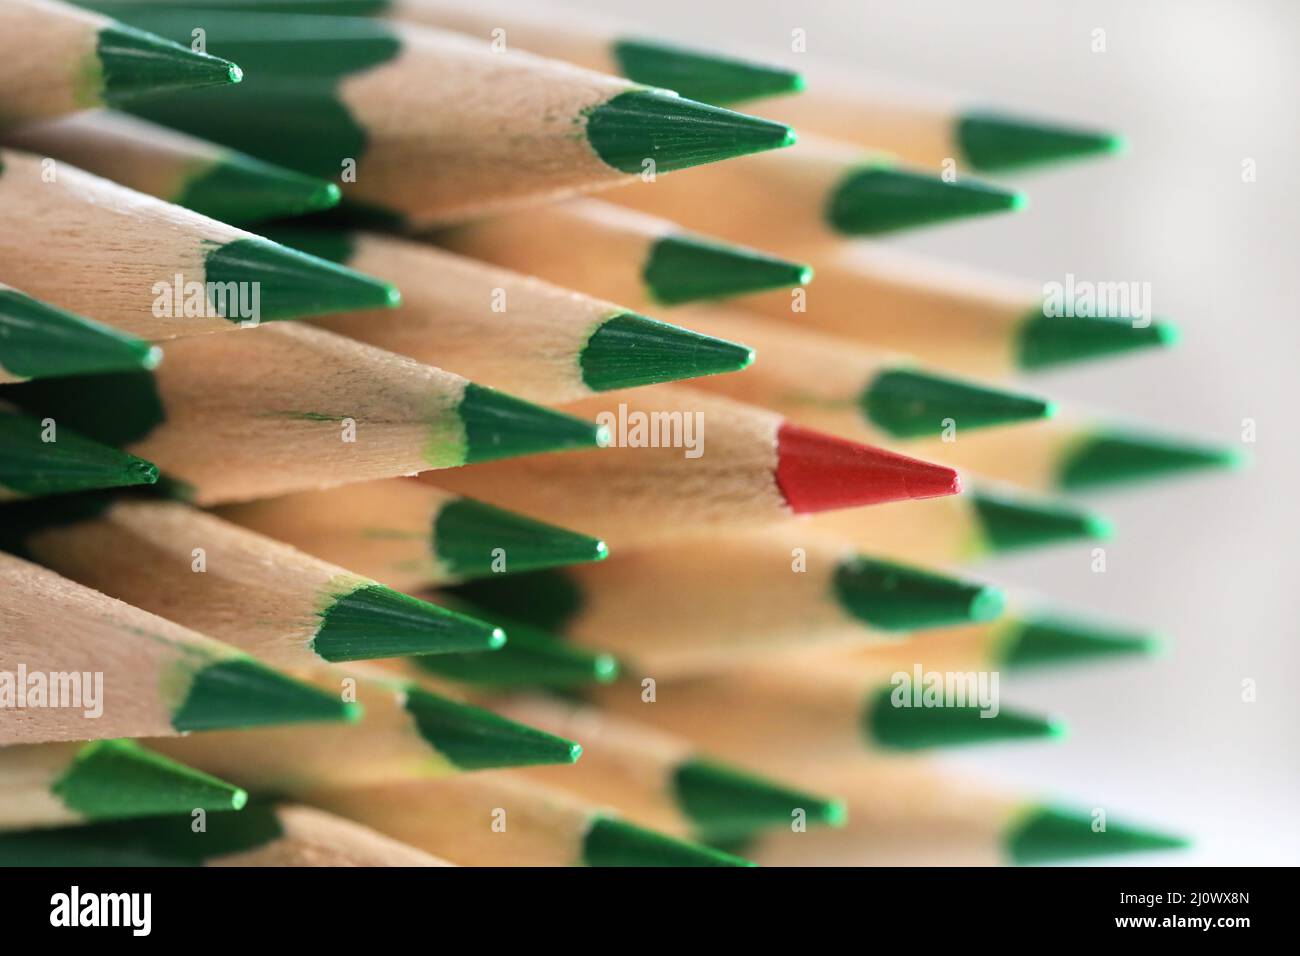 Un solitario lápiz de color rojo puntiagudo que sobresale de la multitud de lápices verdes. Concepto de individualidad y confianza. Celebrando la idea de las diferencias. Foto de stock